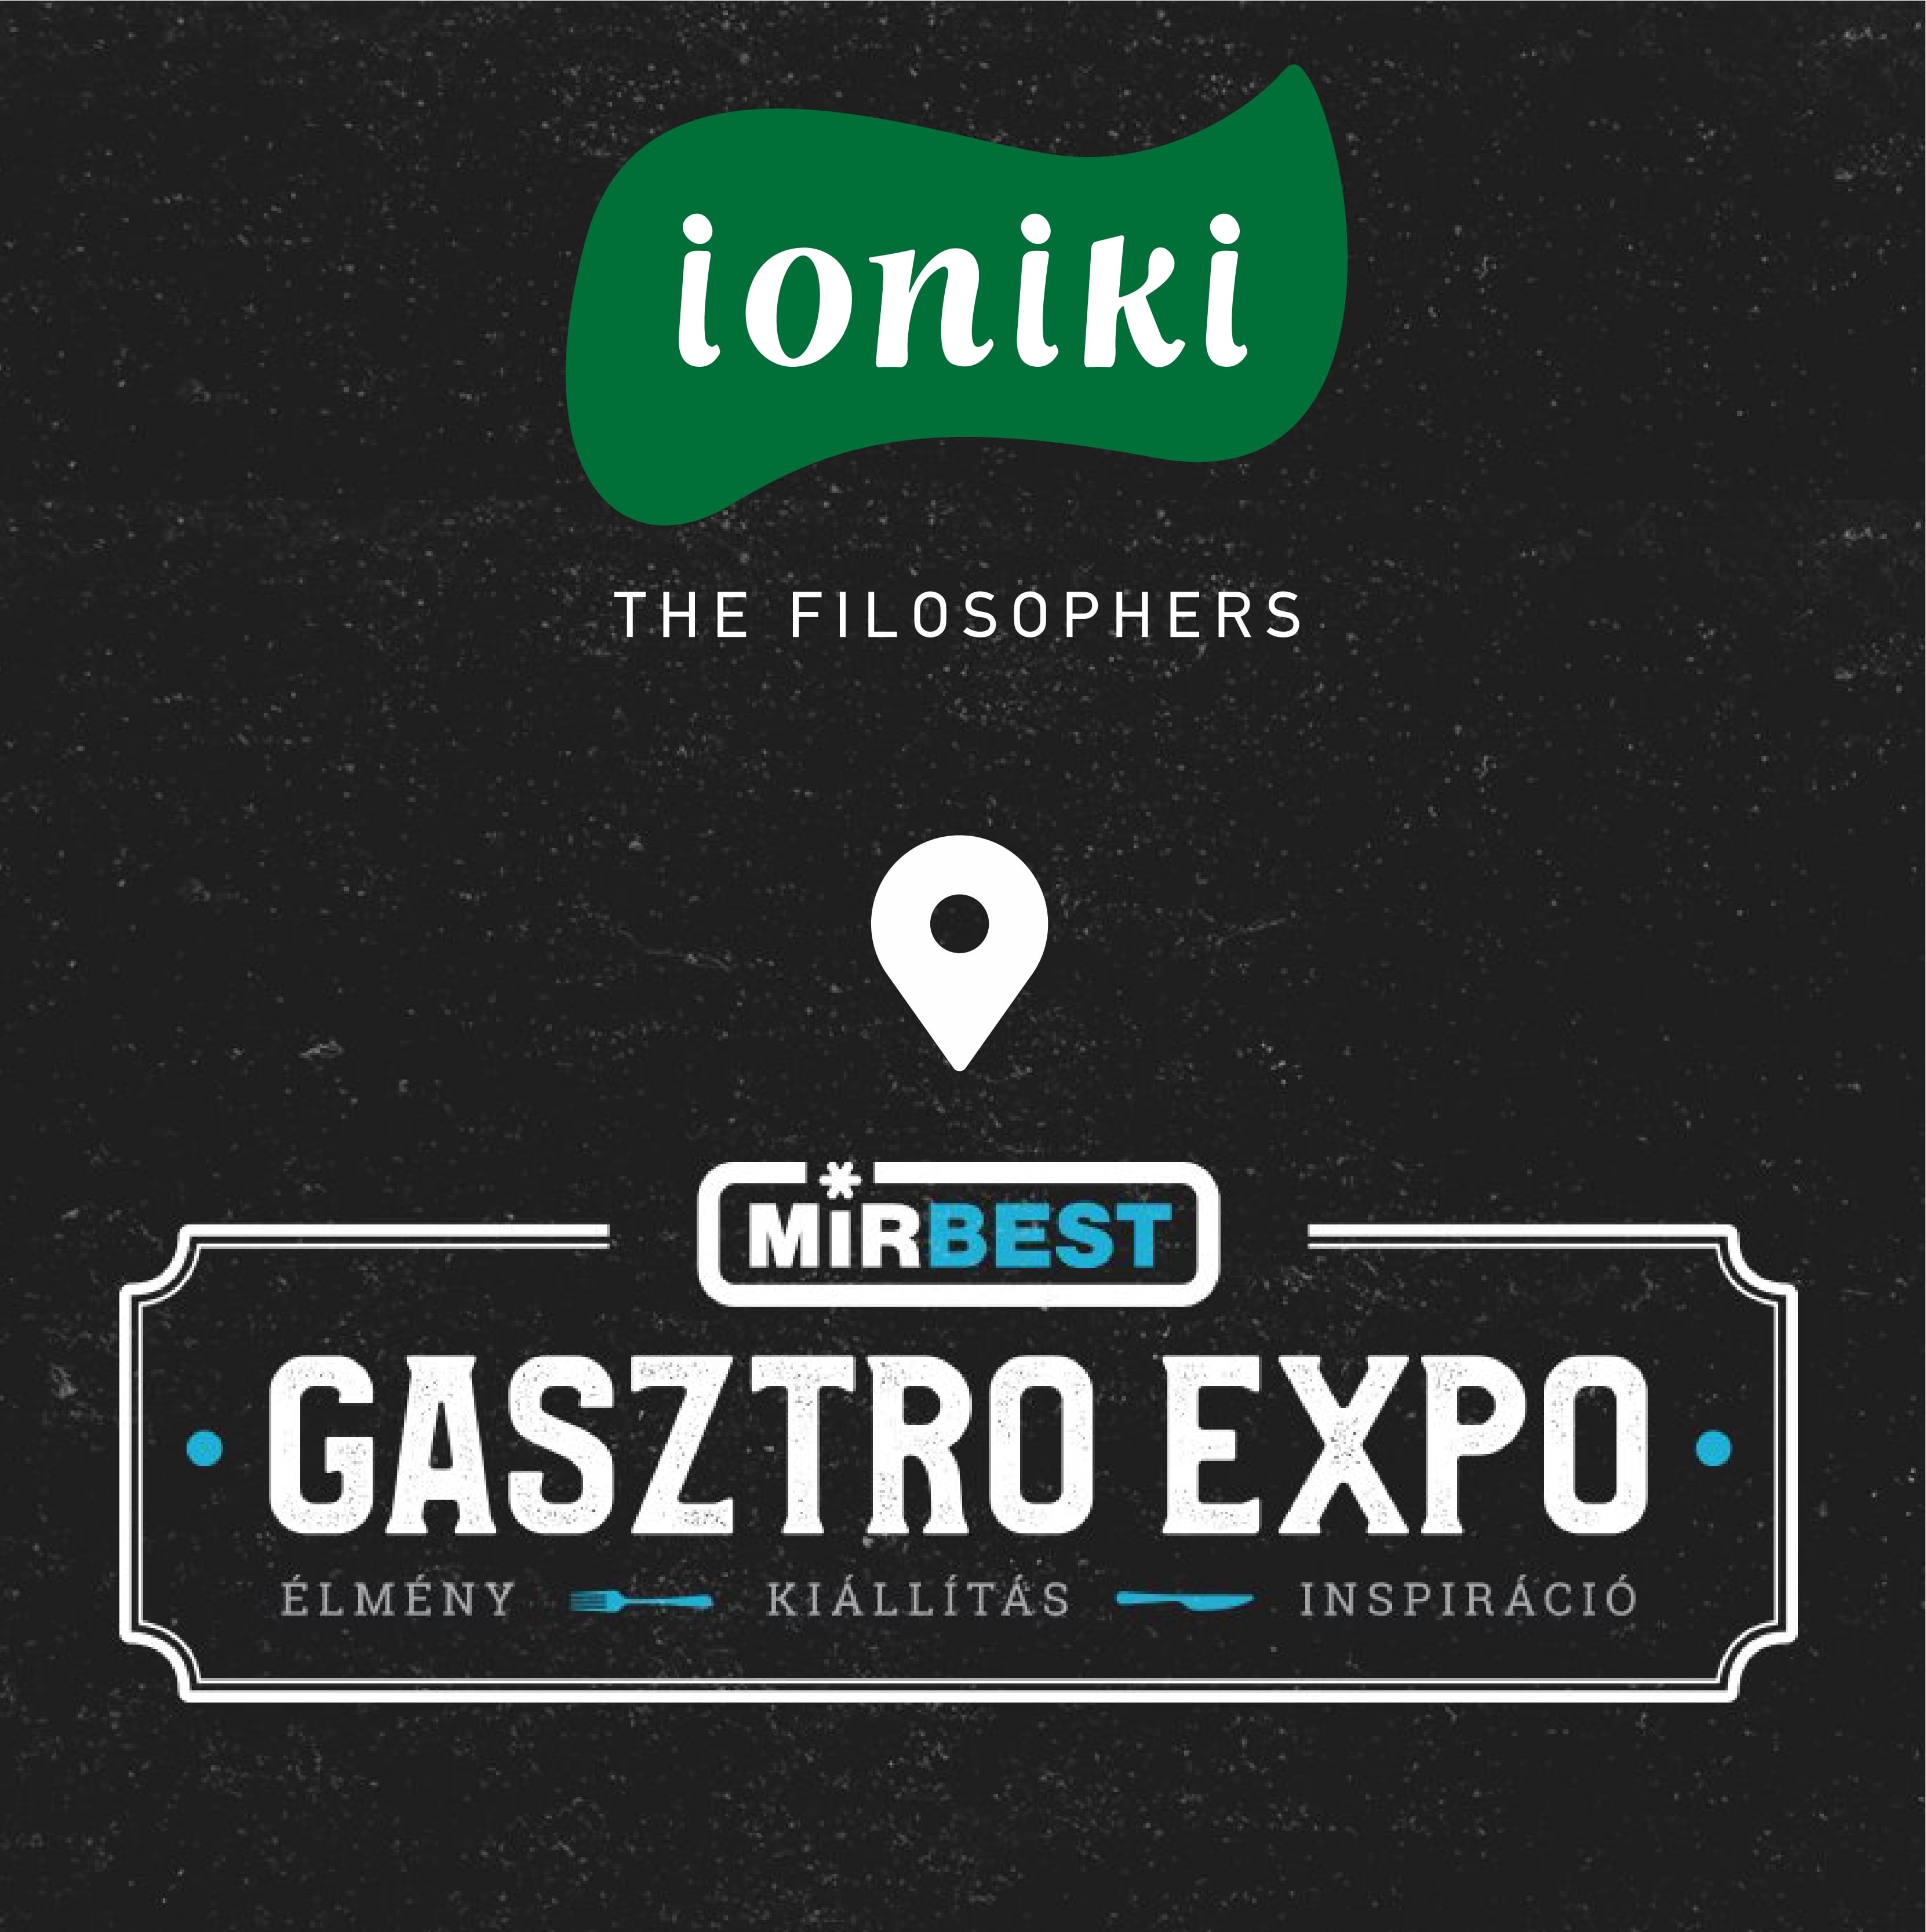 IONIKI MIRABEST GASTRO EXPO 2019